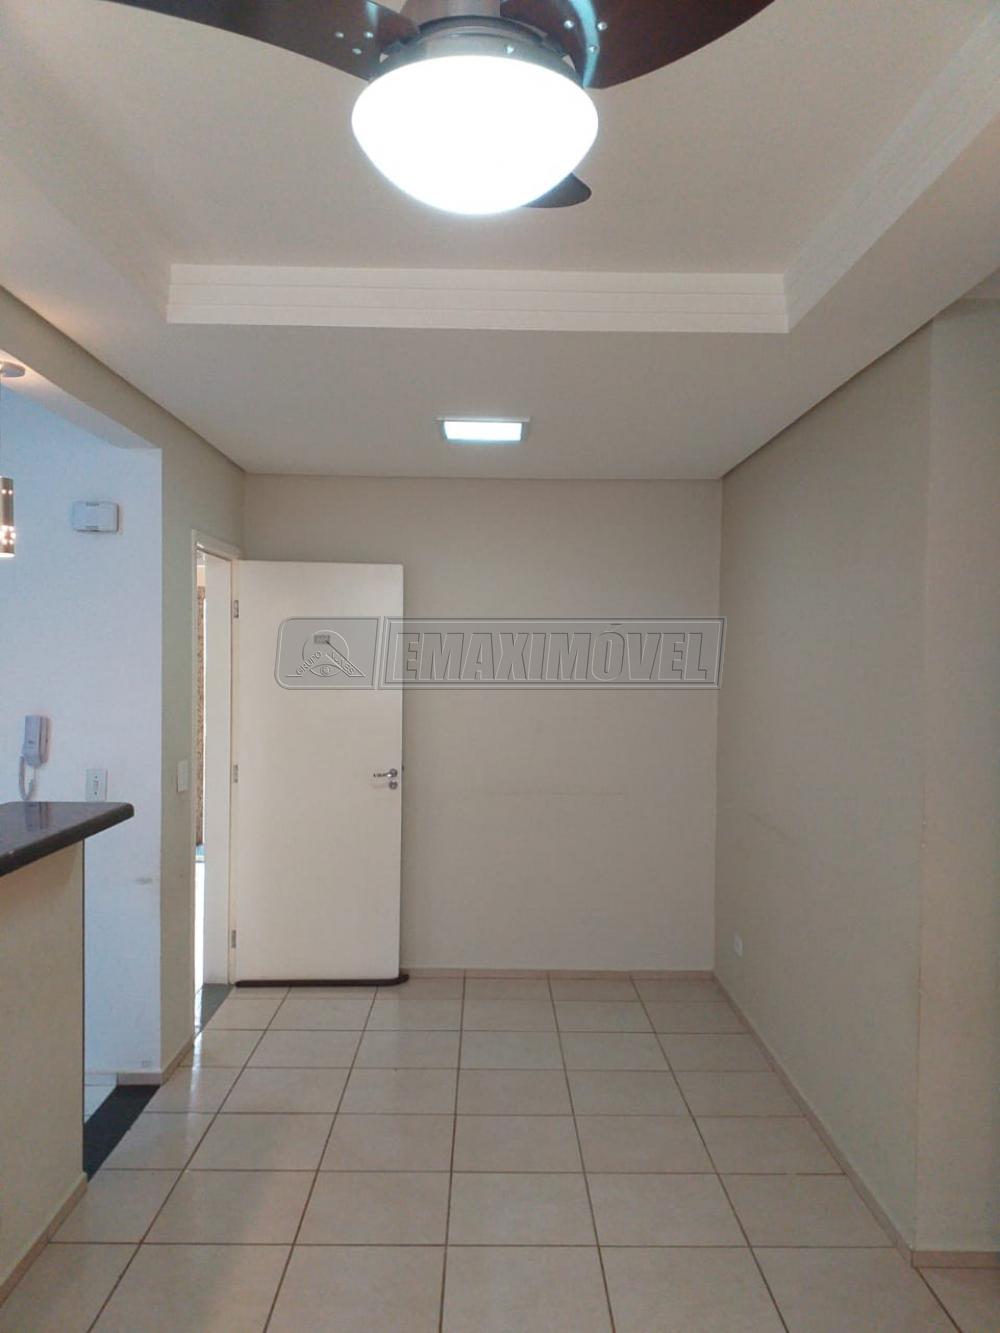 Alugar Apartamento / Padrão em Sorocaba R$ 900,00 - Foto 3